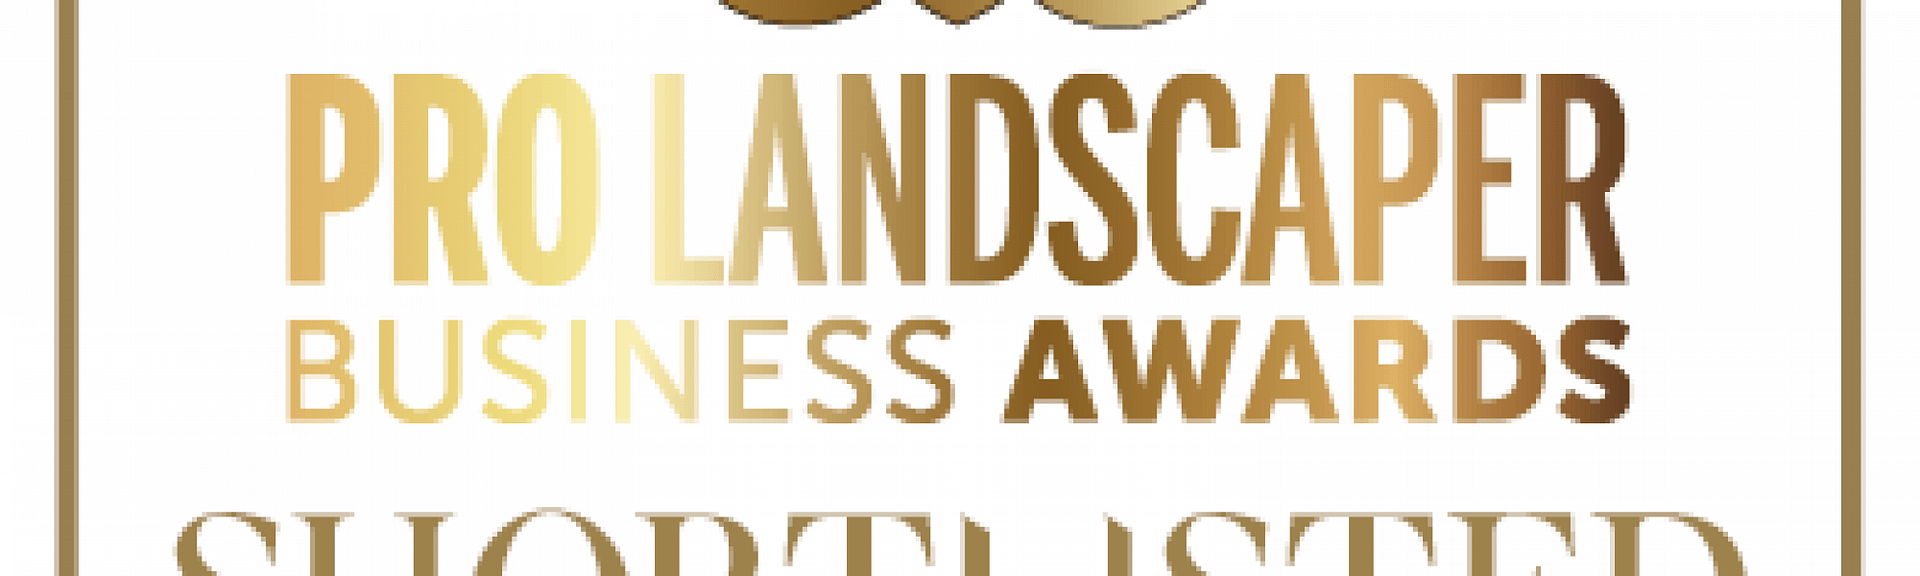 Pro Landscaper Business Awards shortlisted